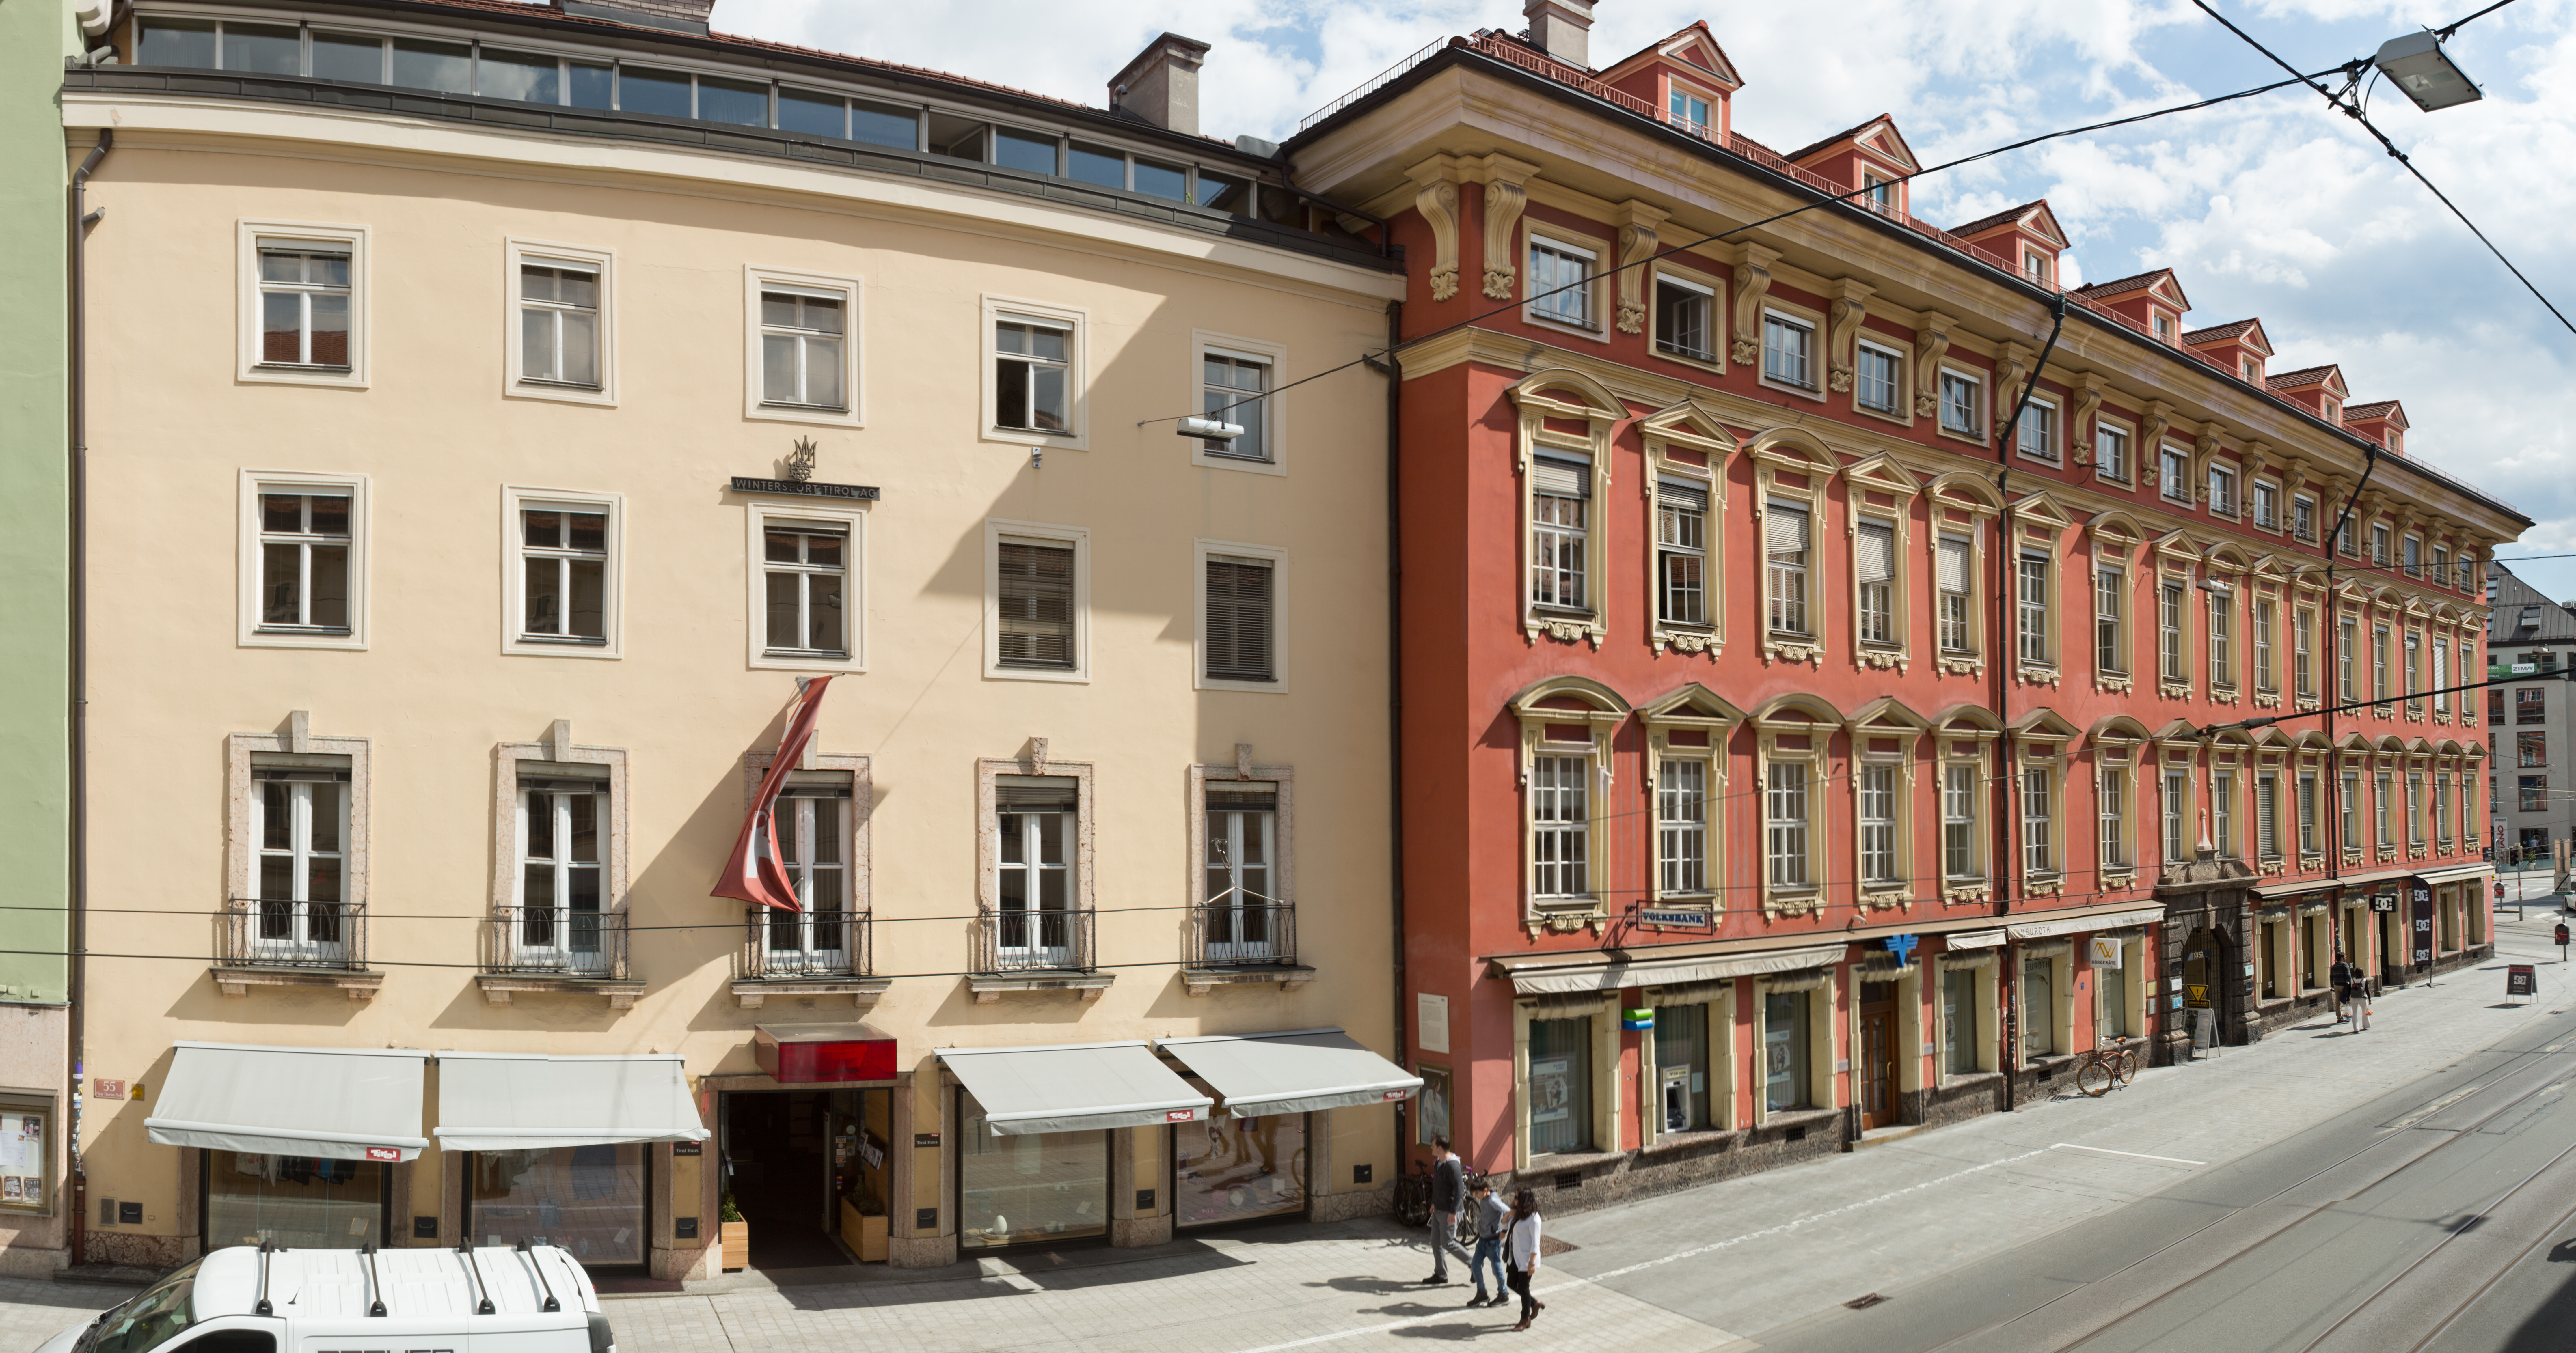 Gebäude der Tirol Werbung inkl. angrenzendes Sarnthein-Palais